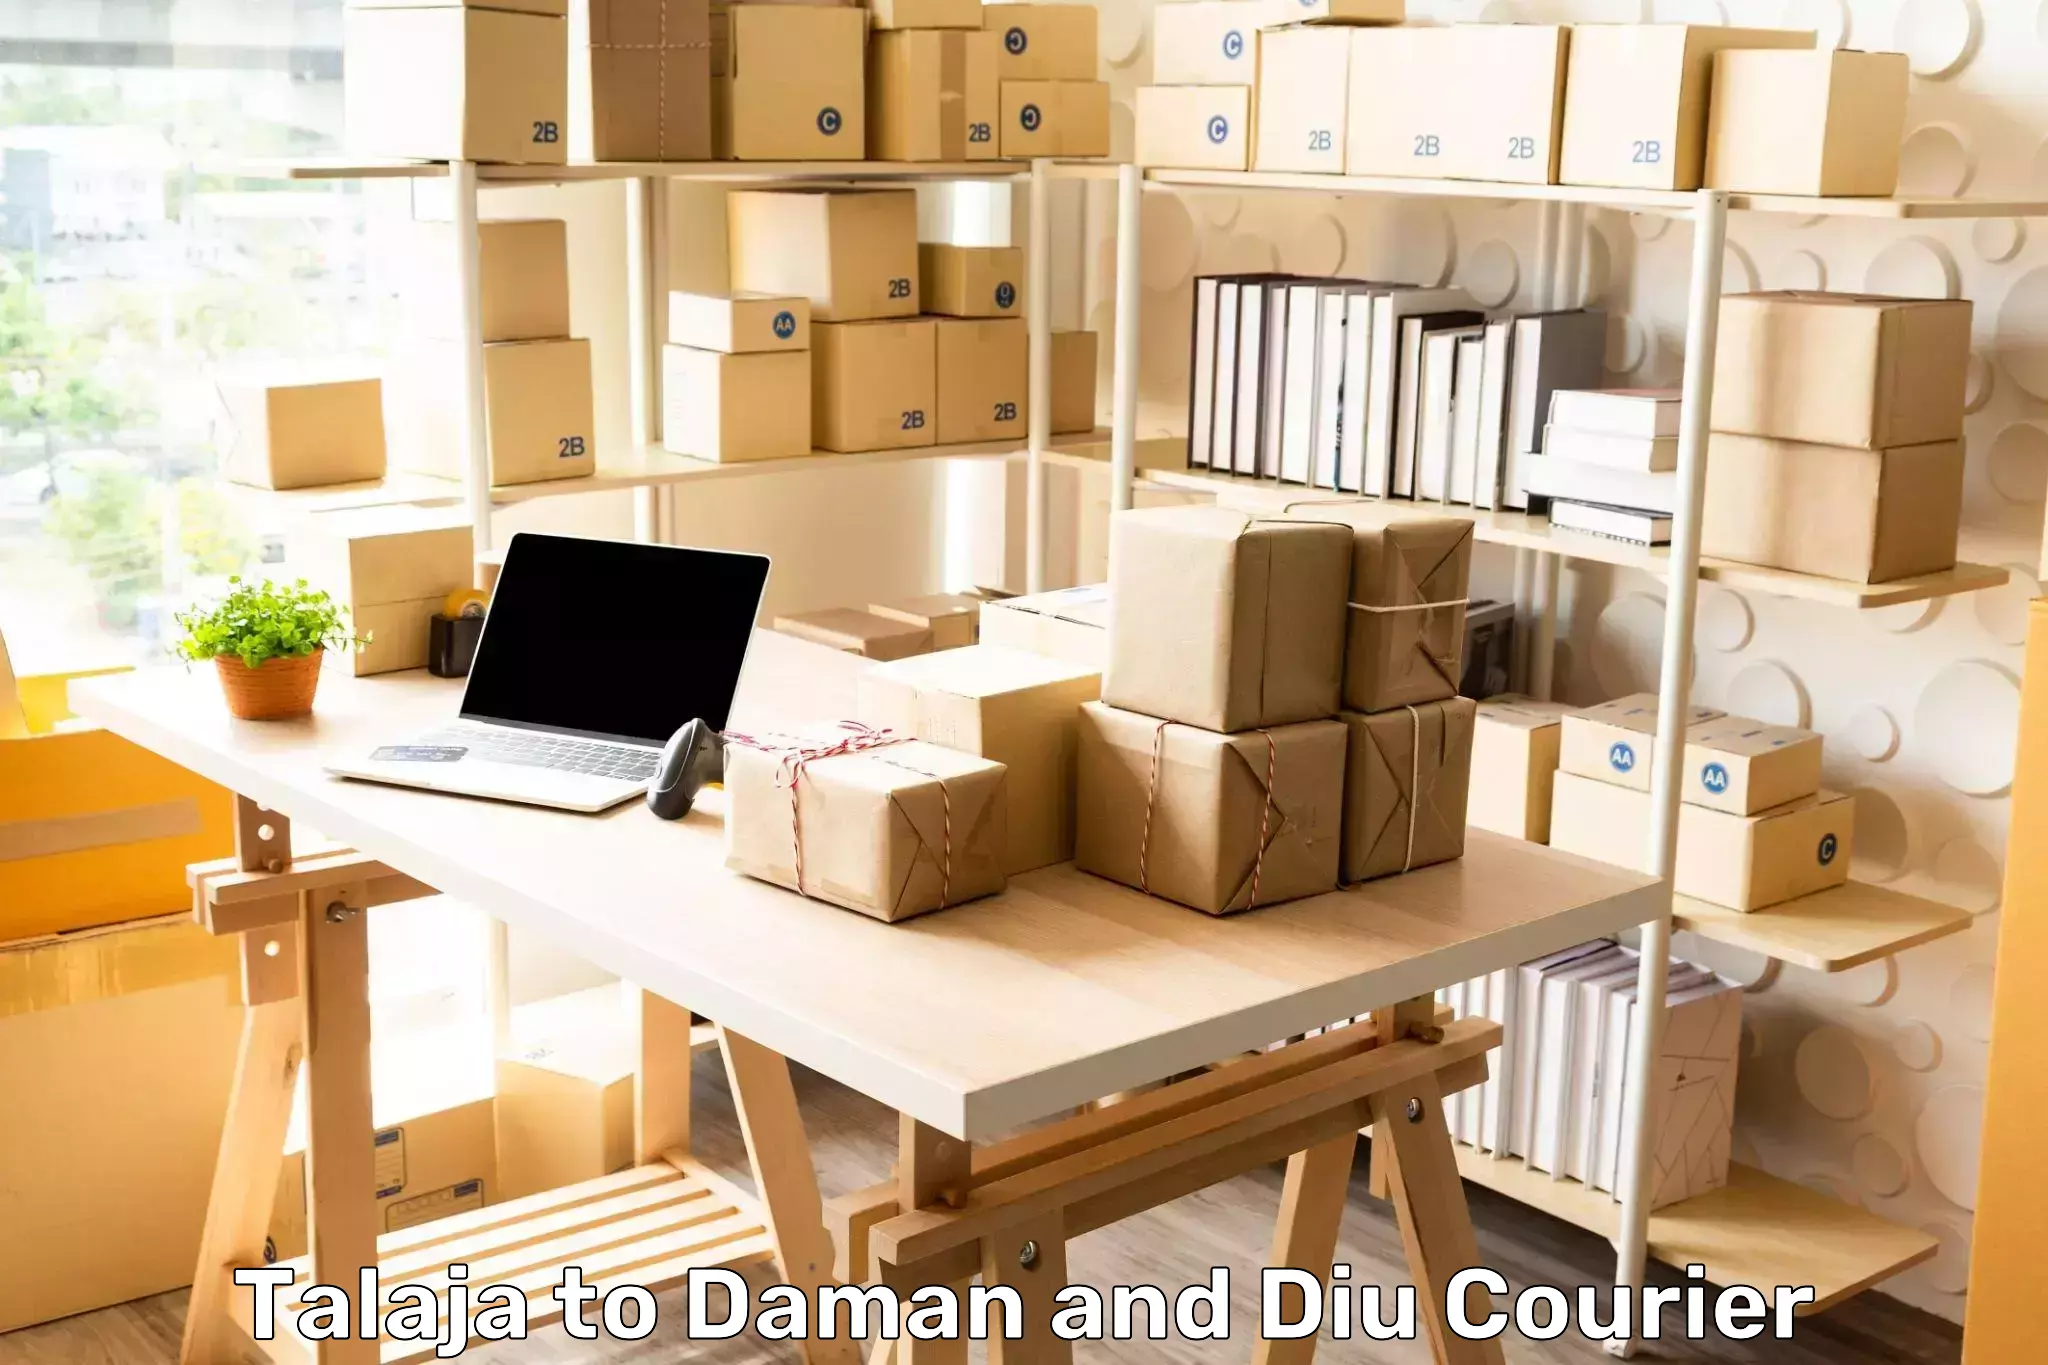 Courier service partnerships Talaja to Daman and Diu